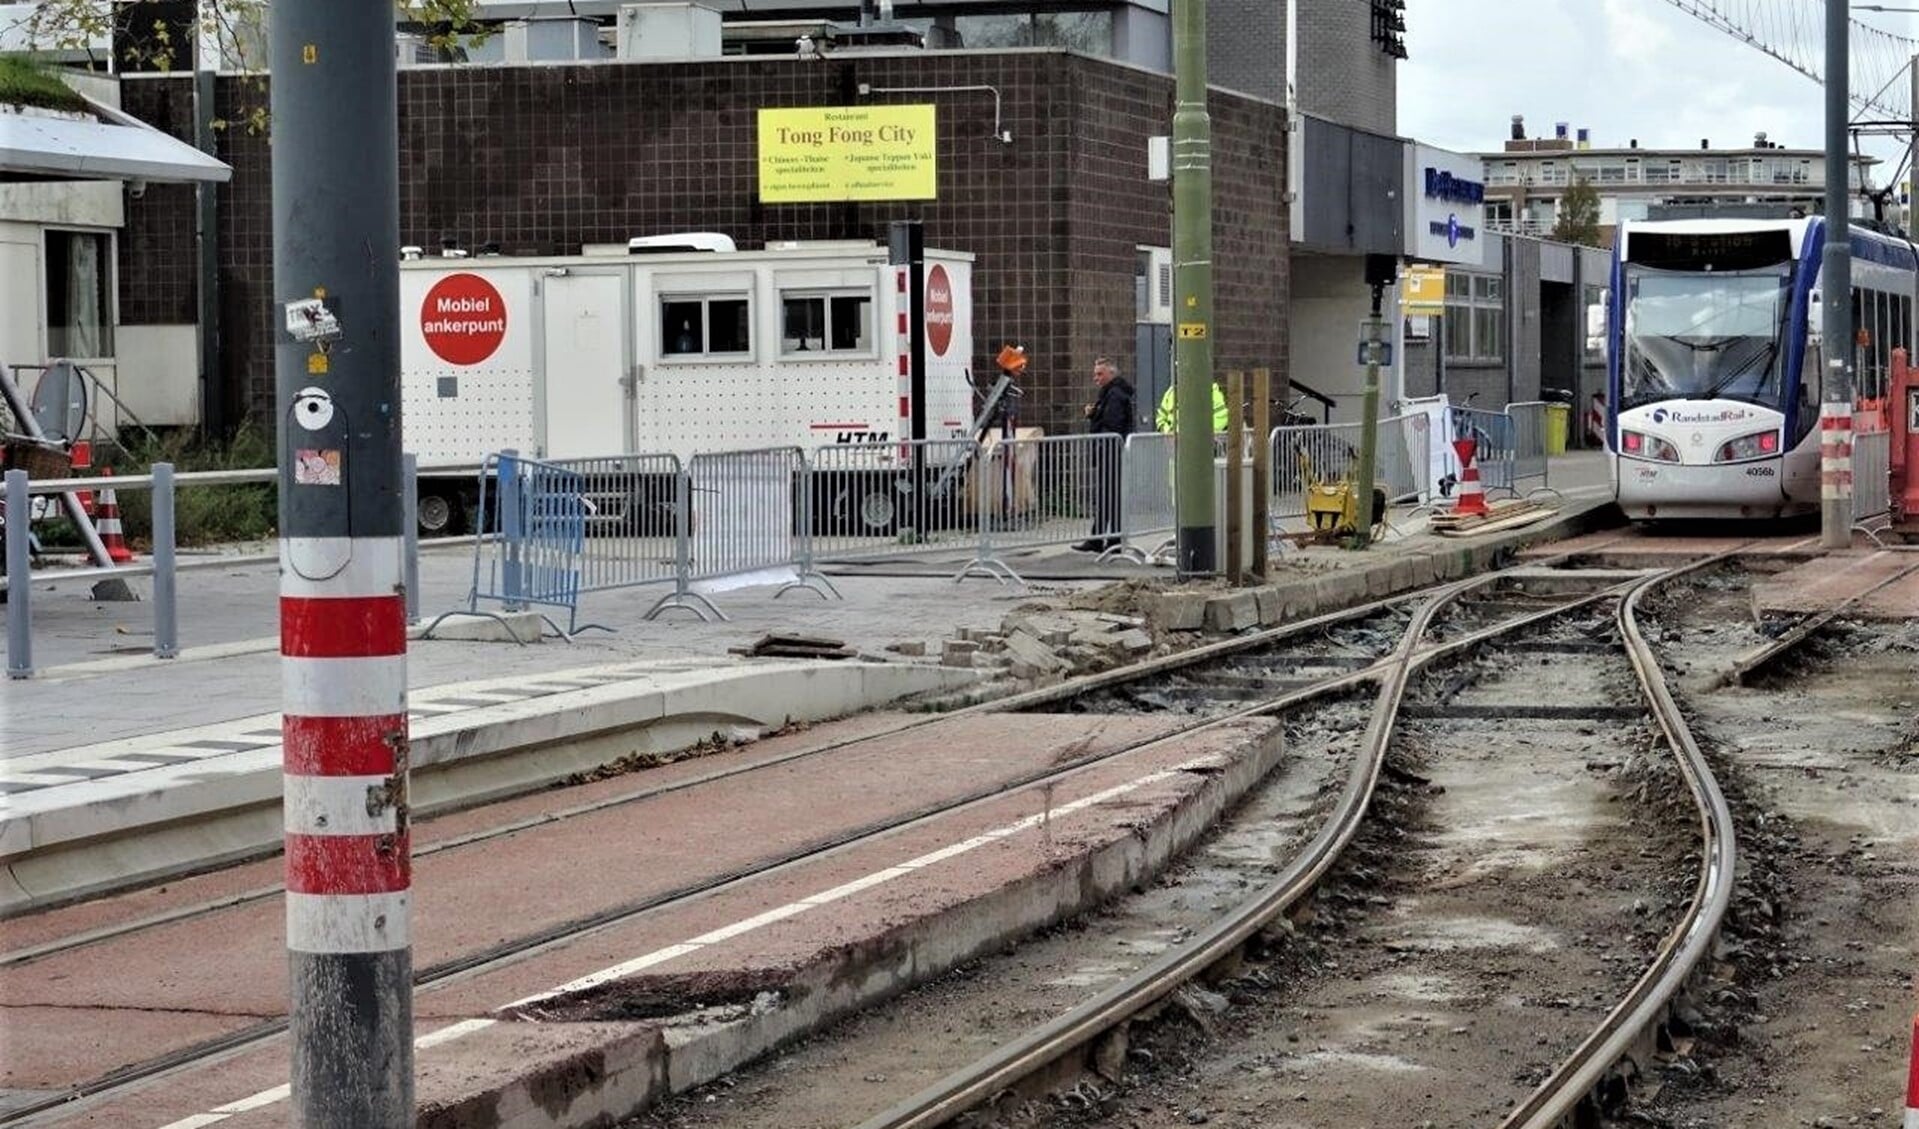 Er worden nu nog werkzaamheden uitgevoerd, maar vanaf maandag 12 oktober rijdt tram 19 weer via de gebruikelijke route (foto: Ap de Heus). 